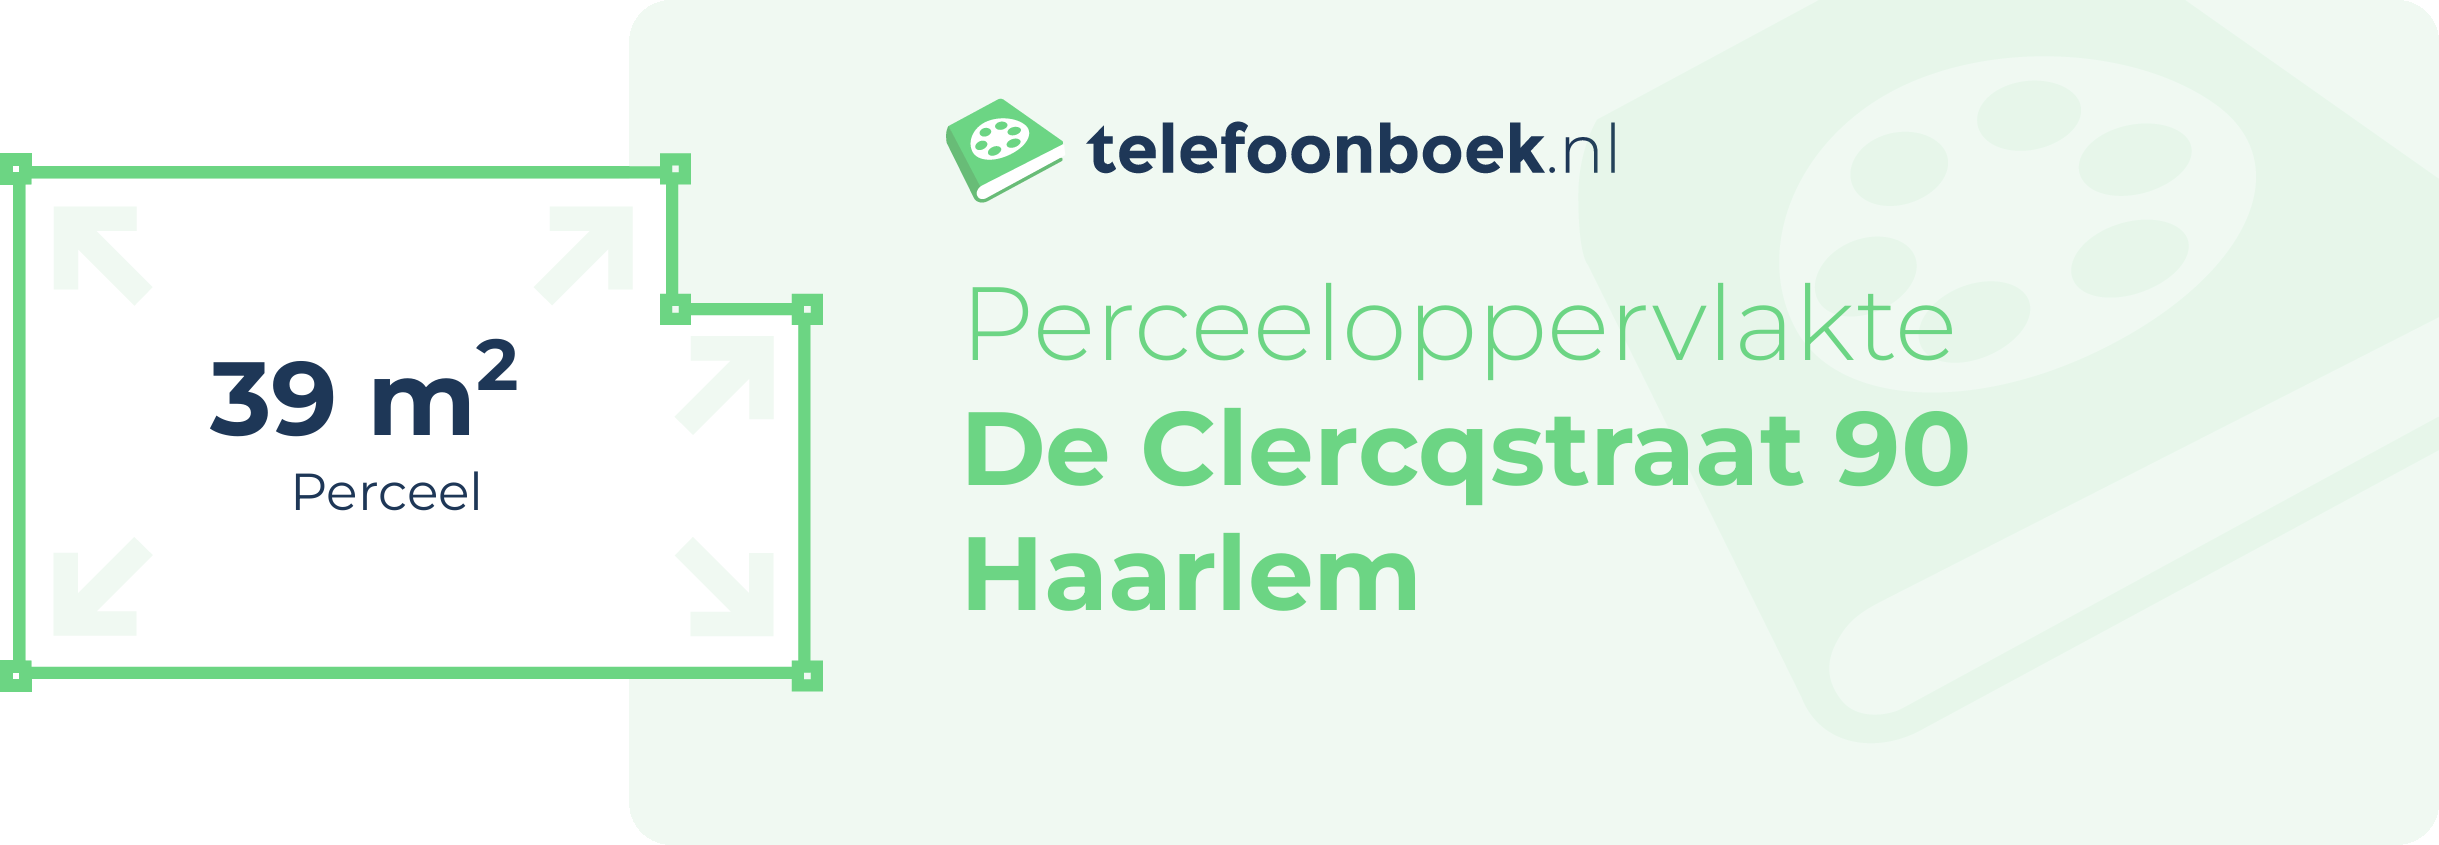 Perceeloppervlakte De Clercqstraat 90 Haarlem